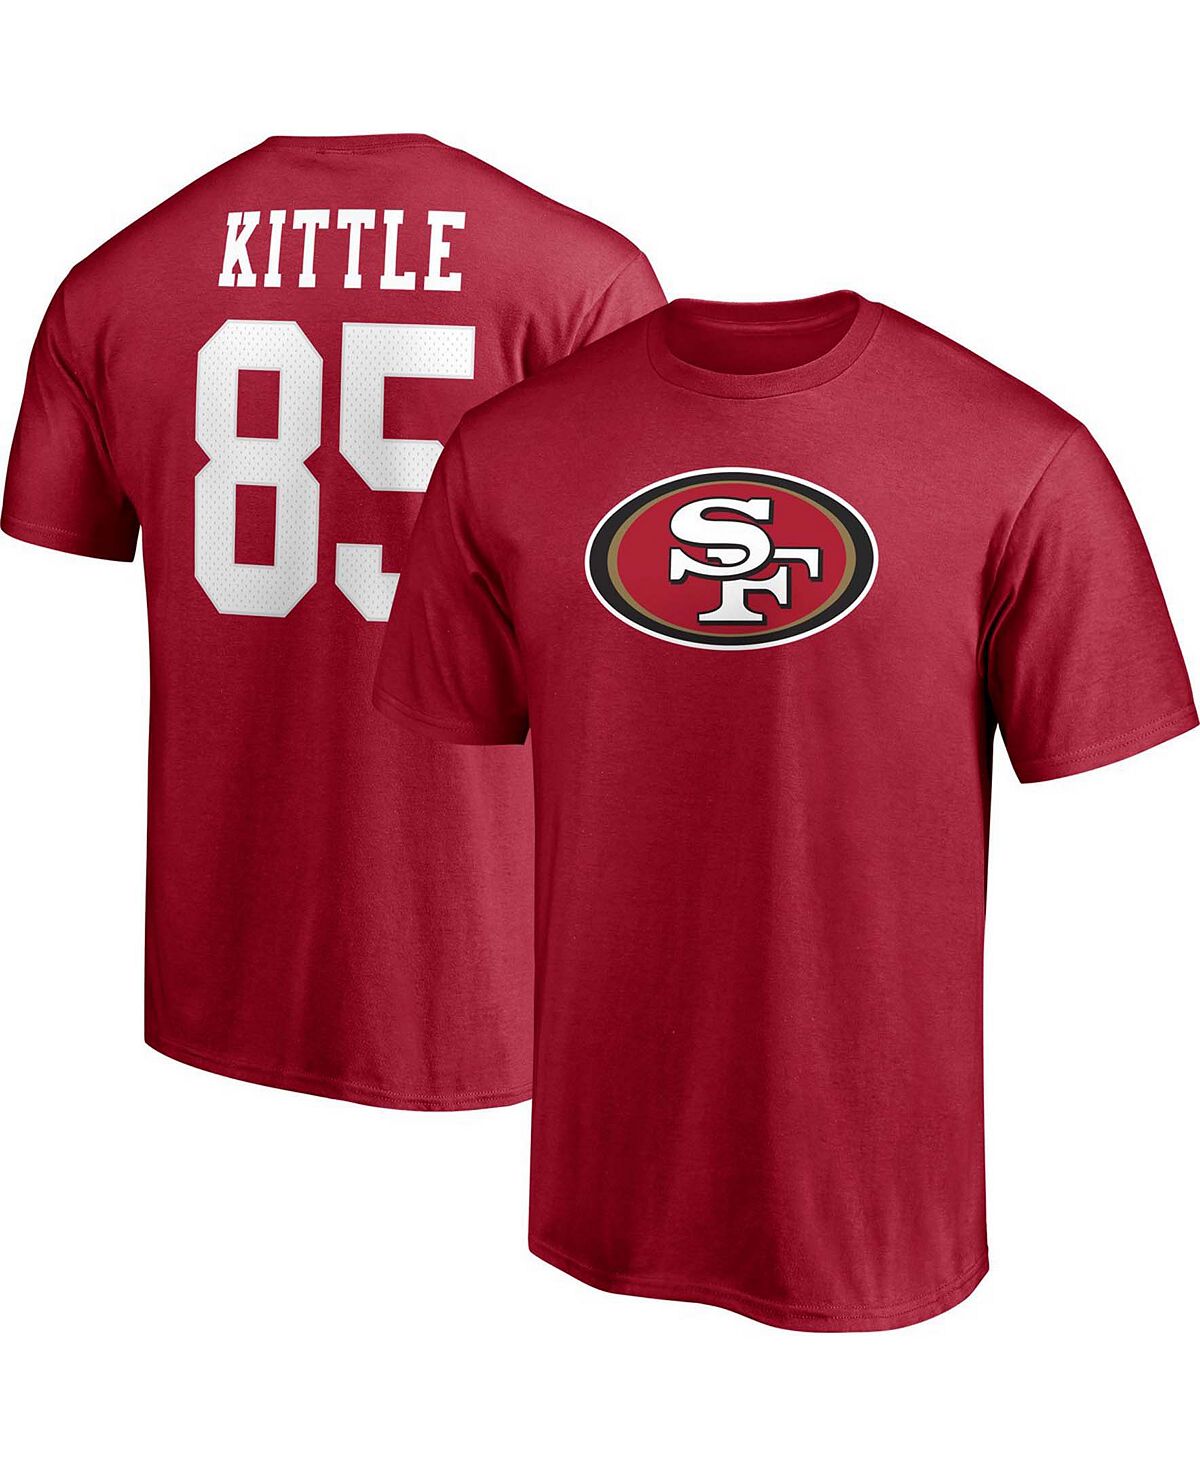 Мужская футболка с именем и номером игрока George Kittle Scarlet San Francisco 49ers Fanatics